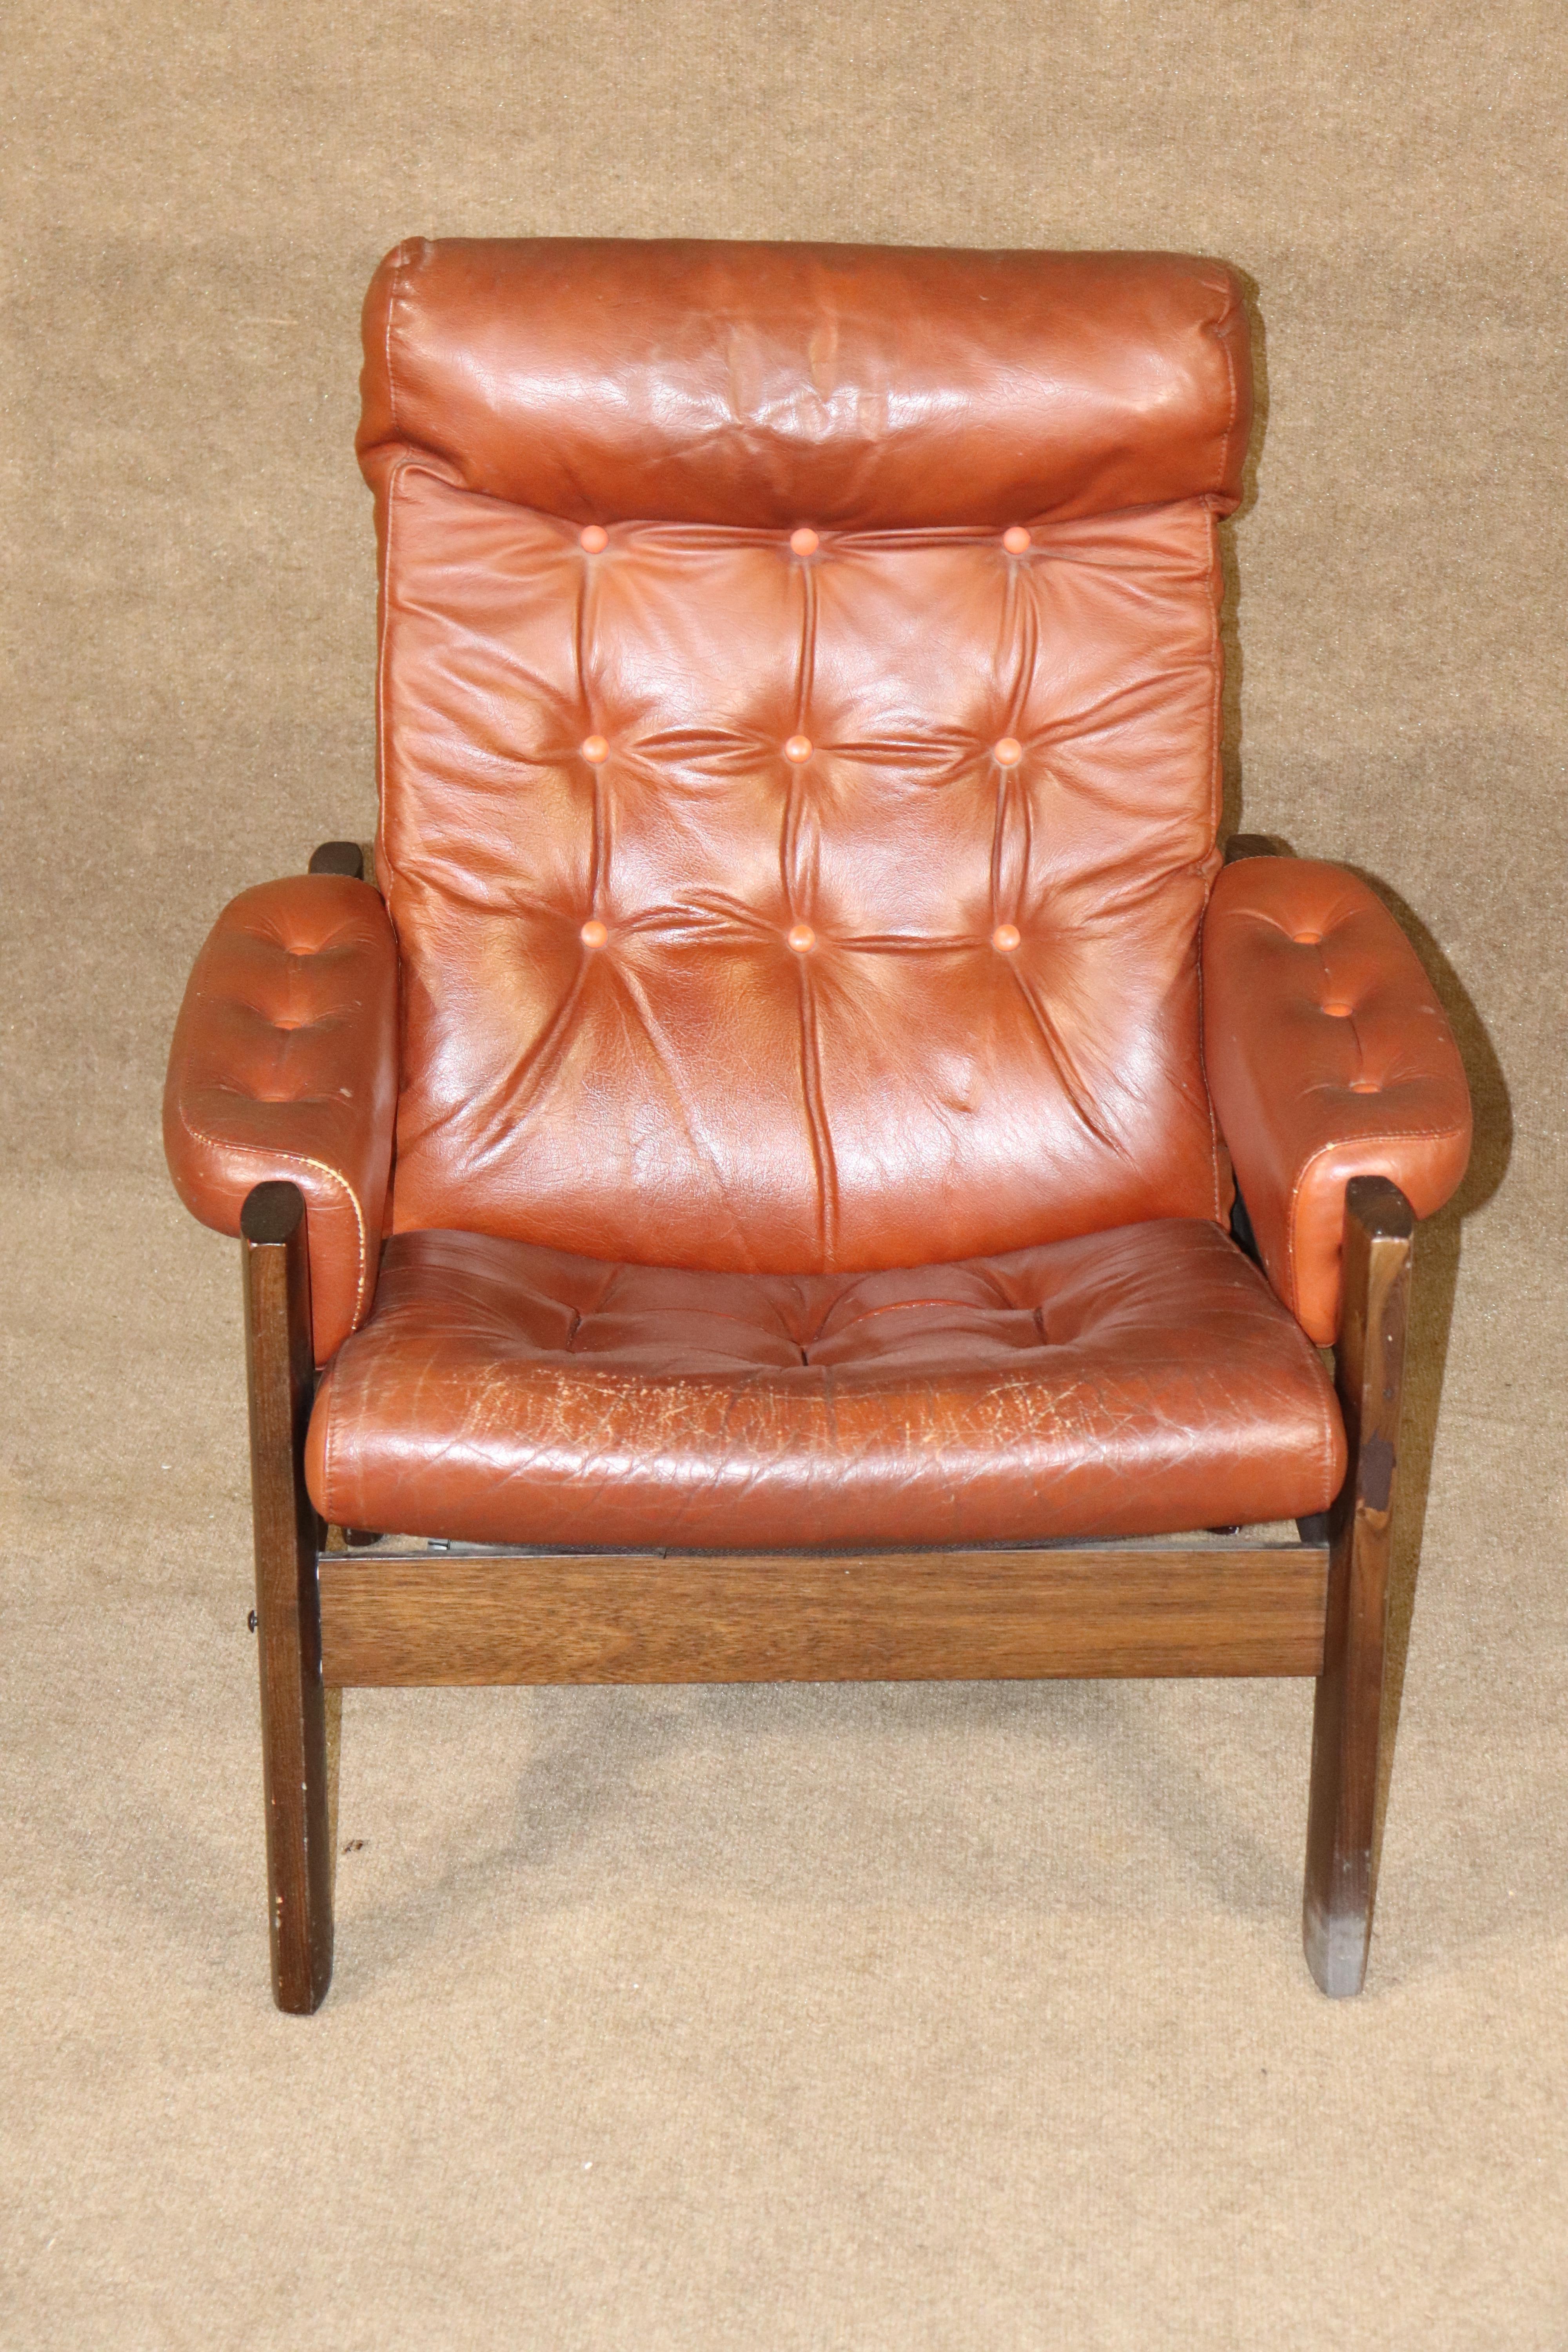 Chaise longue vintage du milieu du siècle avec ottoman assorti. Assise en cuir avec design tufté sur un cadre en bois solide.
Veuillez confirmer le lieu NY ou NJ